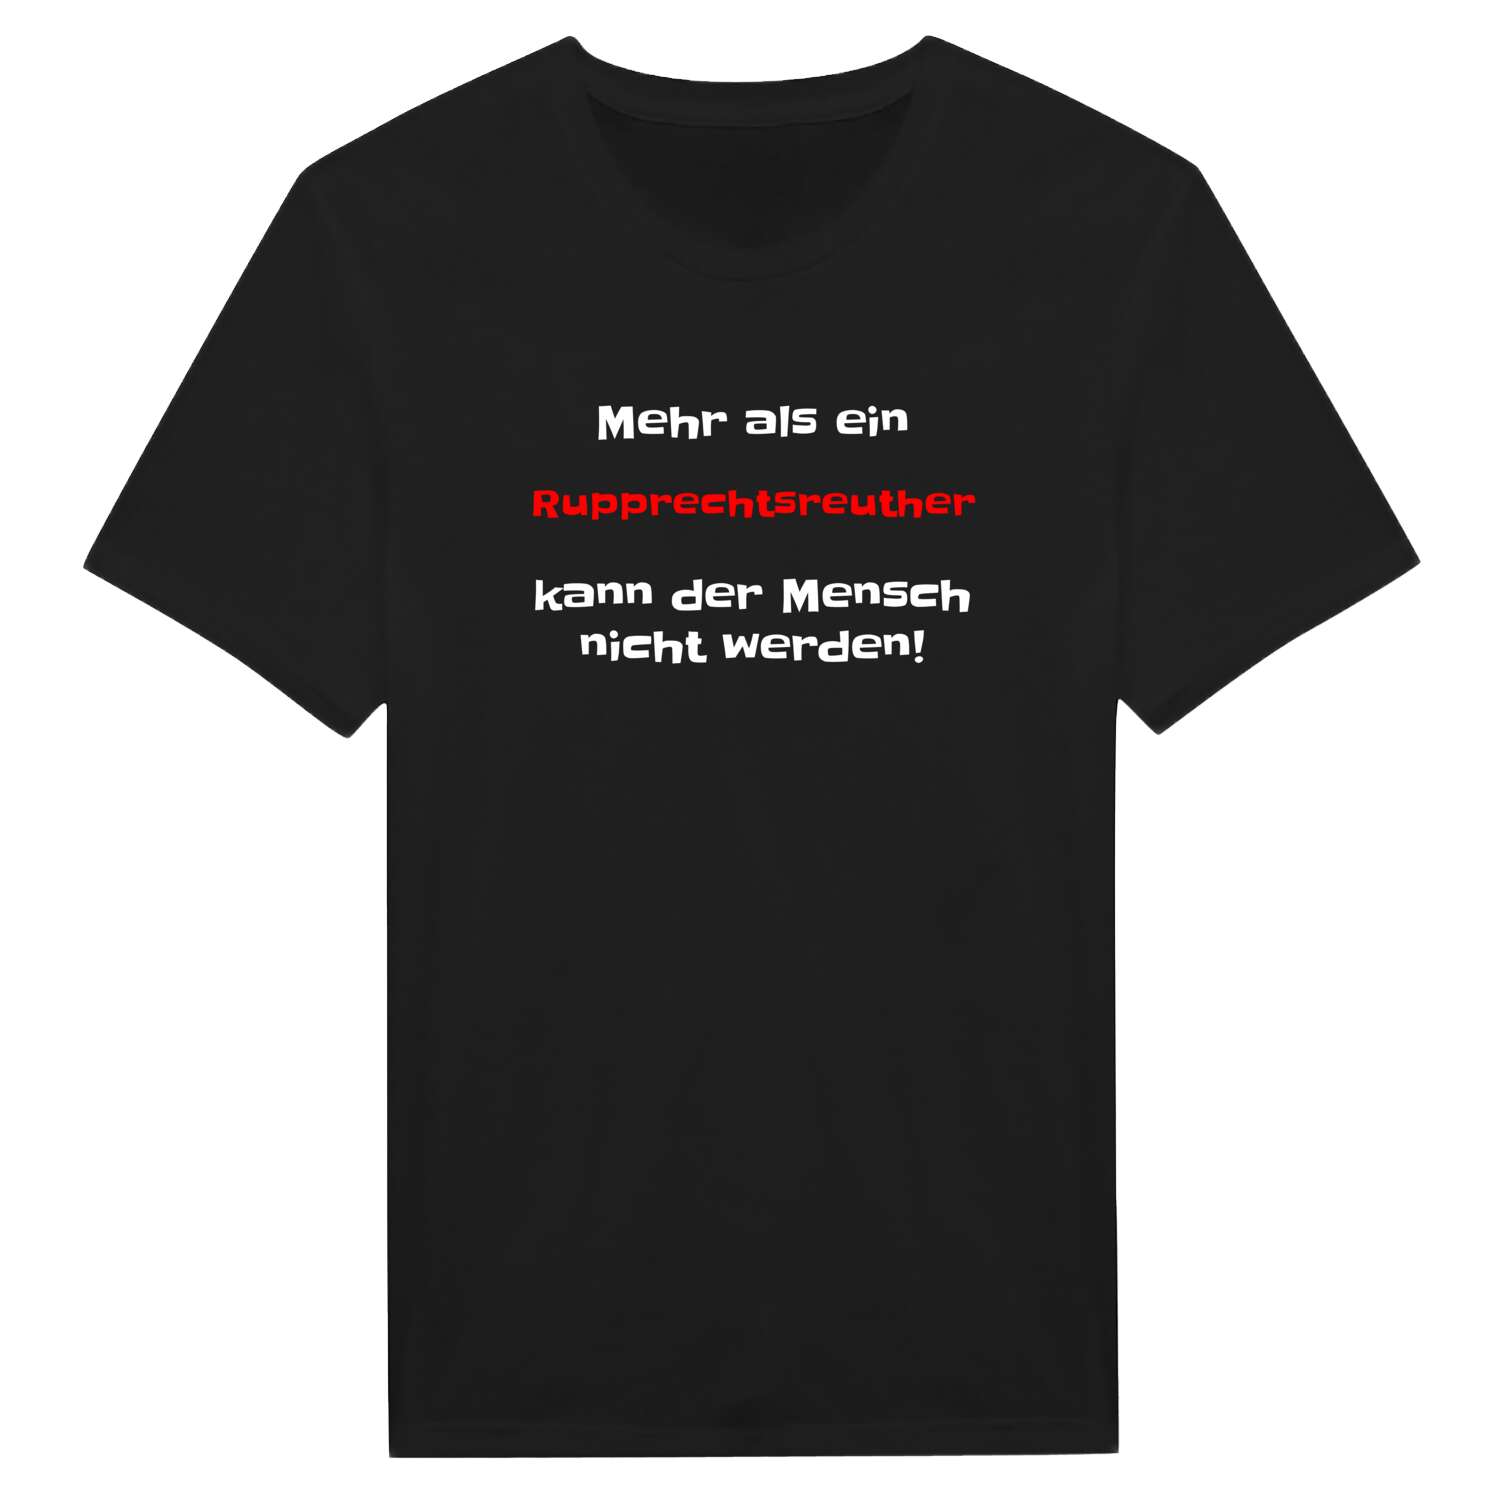 Rupprechtsreuth T-Shirt »Mehr als ein«